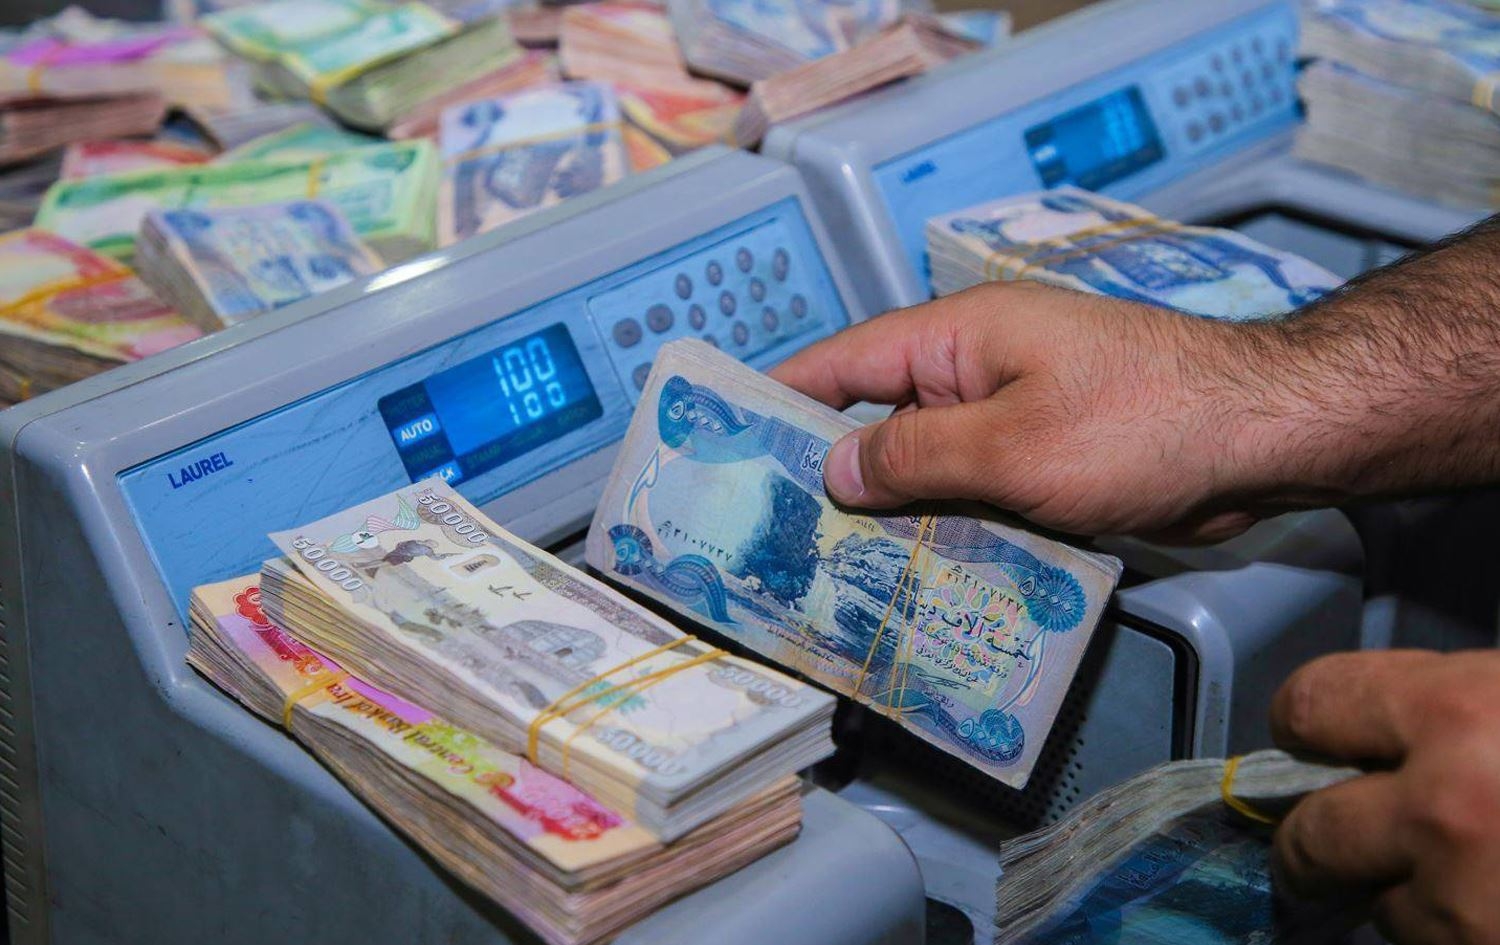 مالية كوردستان تعلن إيداع نحو 700 مليار دينار بحسابها رواتب القوات الأمنية بالإقليم